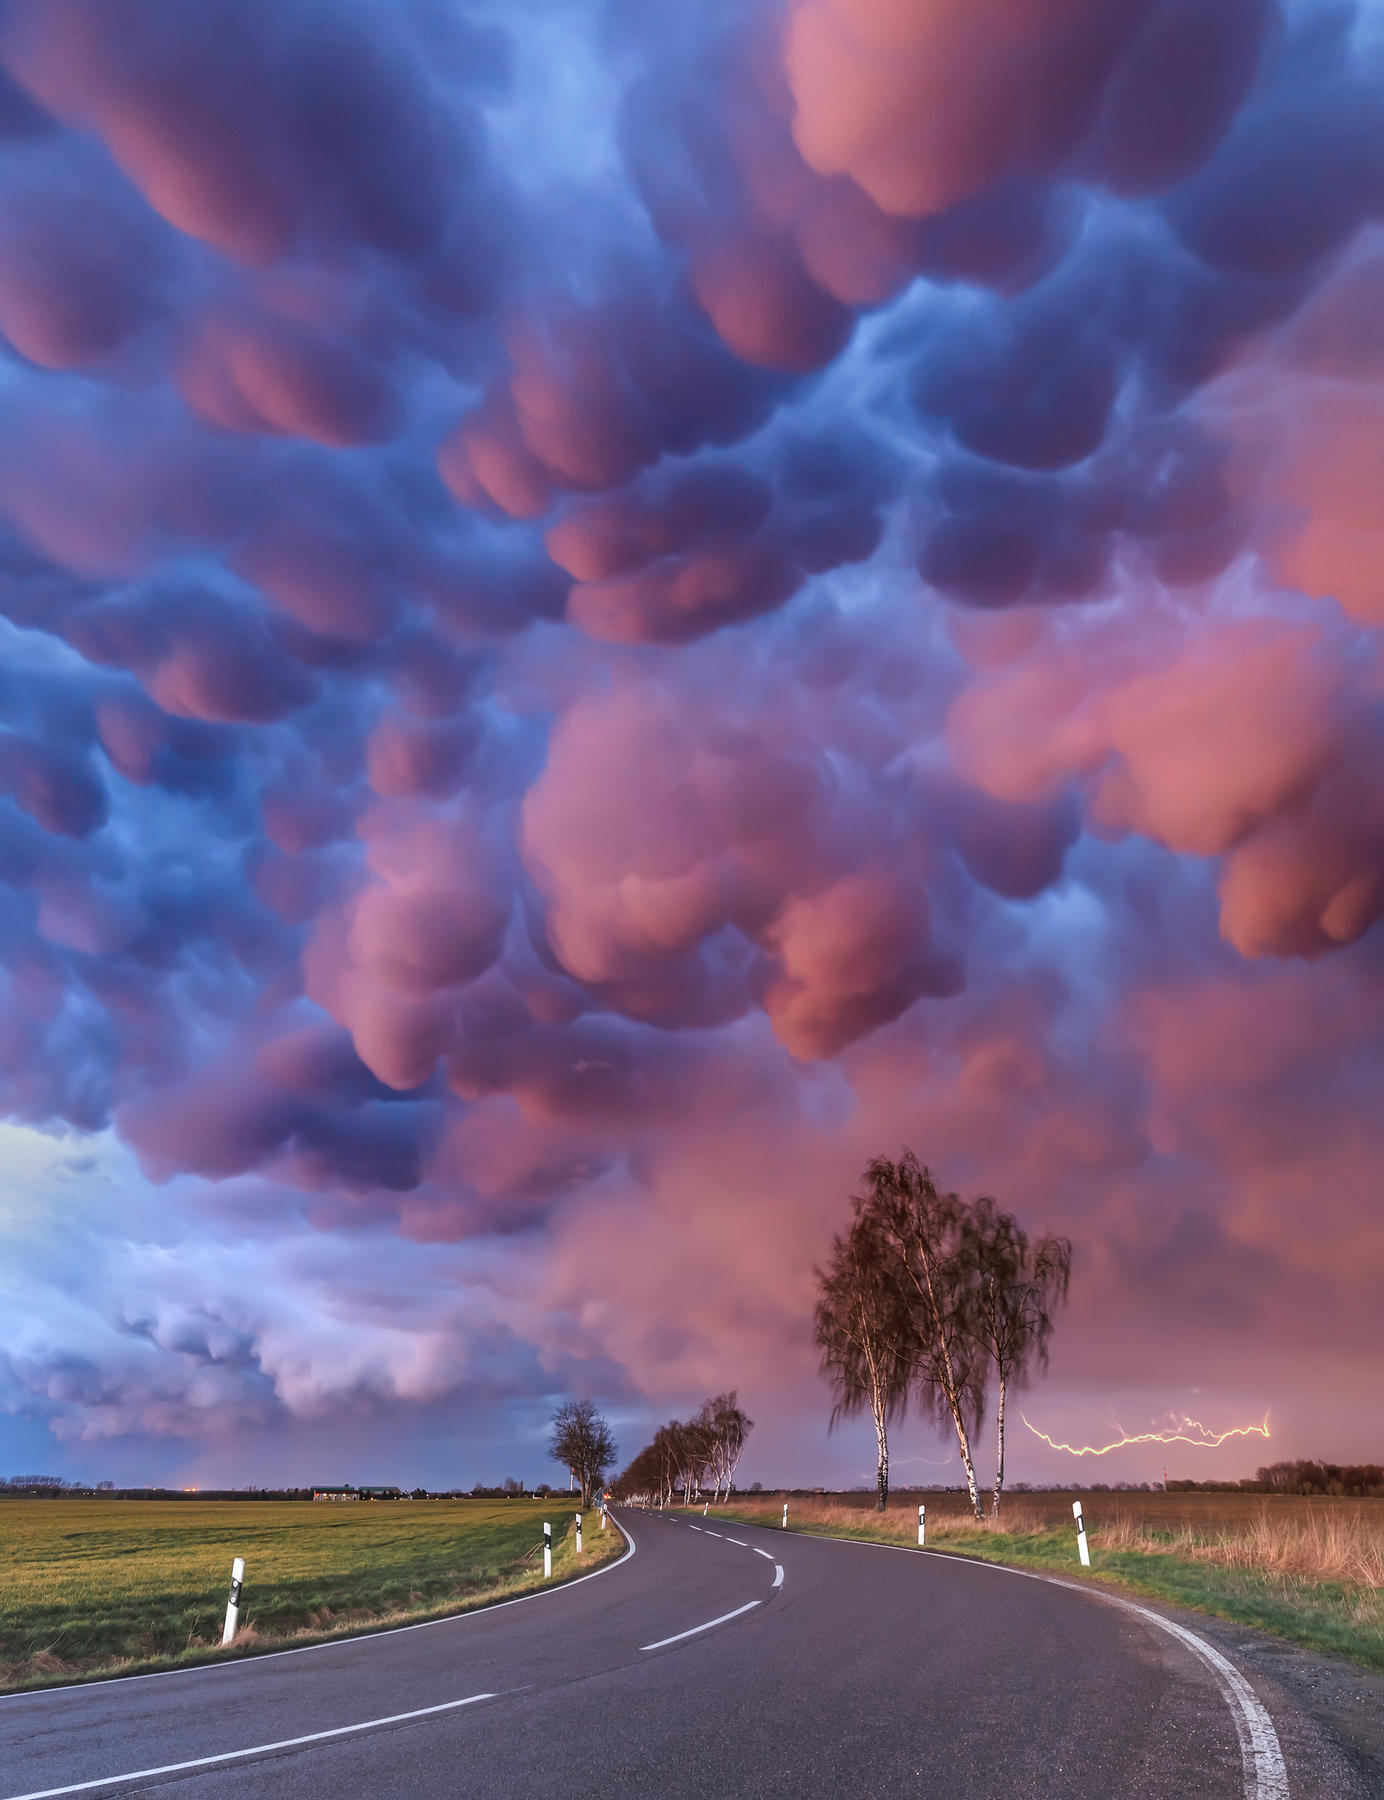 Prêmio de fotografia, concurso de fotografia, Royal Meteorological Society, Reino Unido, mudança climática, foto do céu 